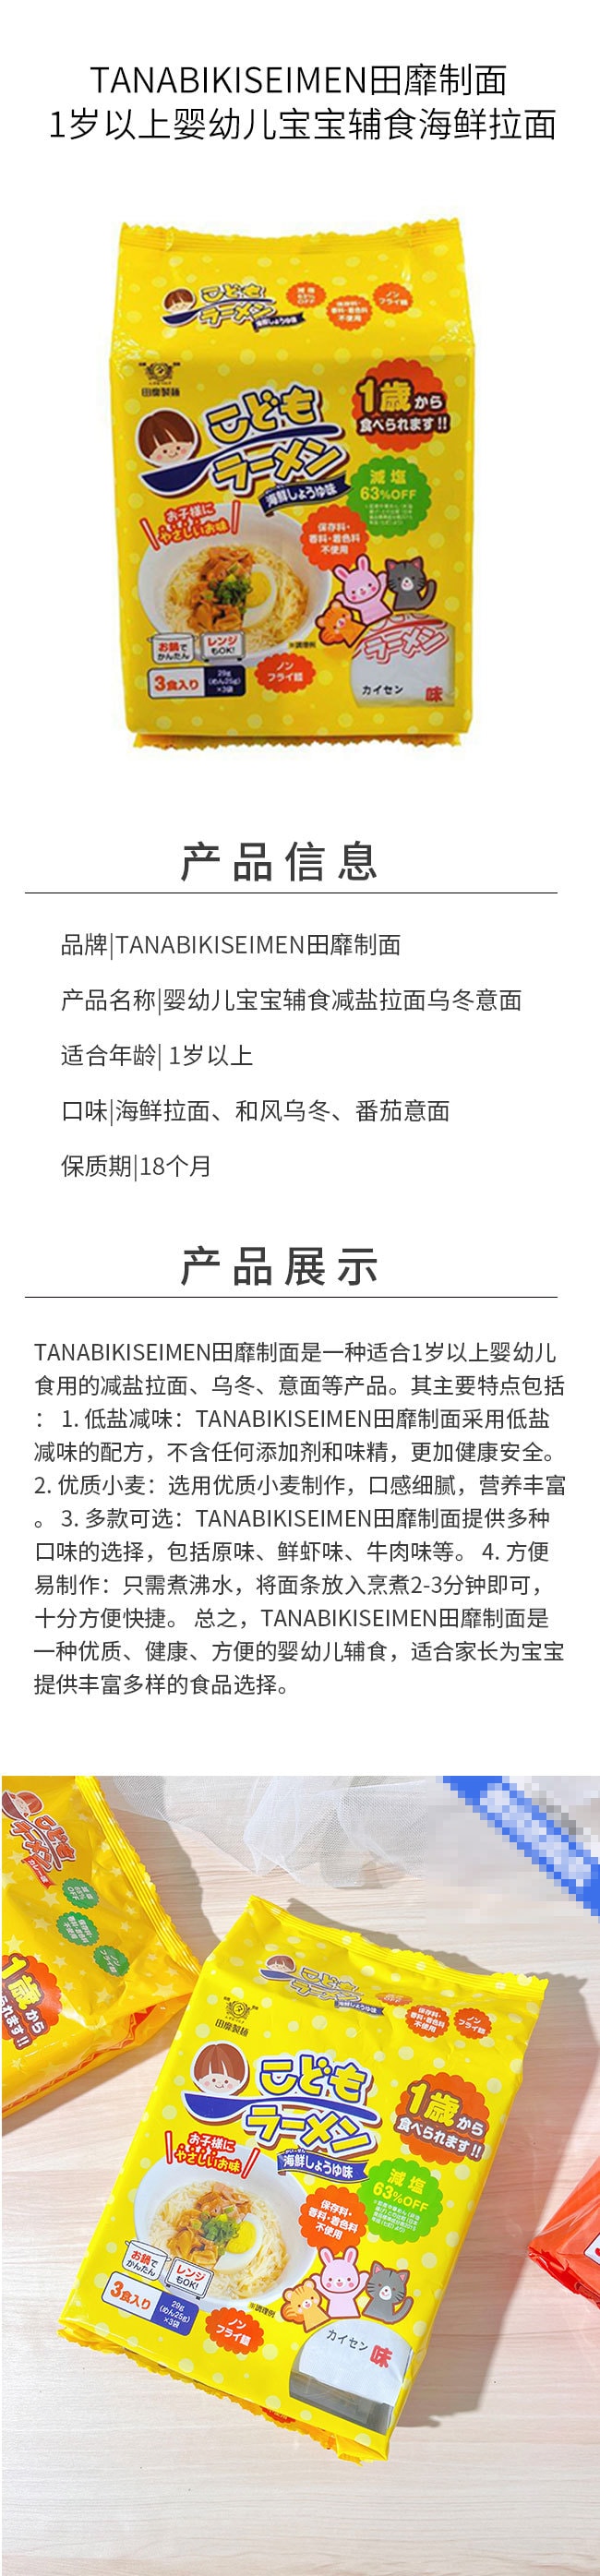 【日本直效郵件】TANABIKISEIMEN田靡製面 1歲以上嬰幼兒寶寶輔食 海鮮拉麵